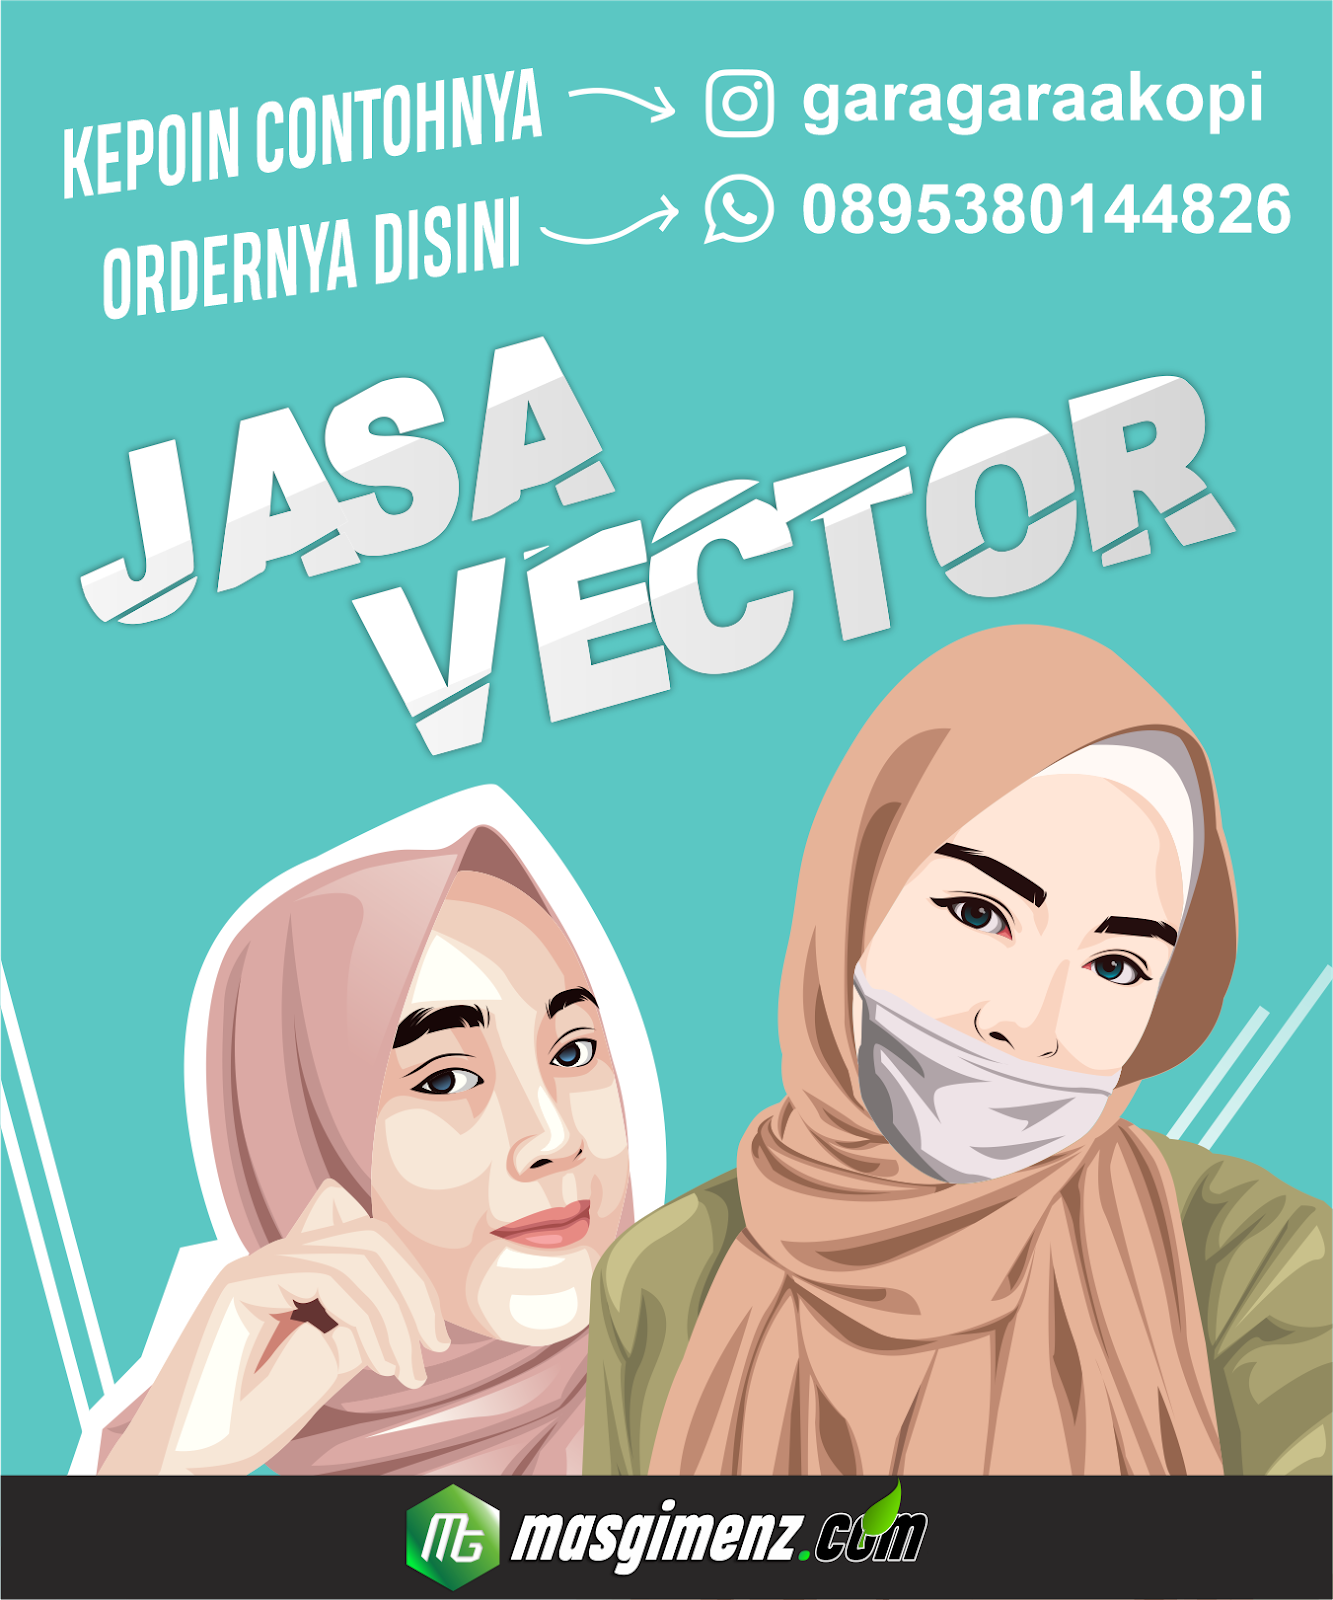 Jasa Vector Murah